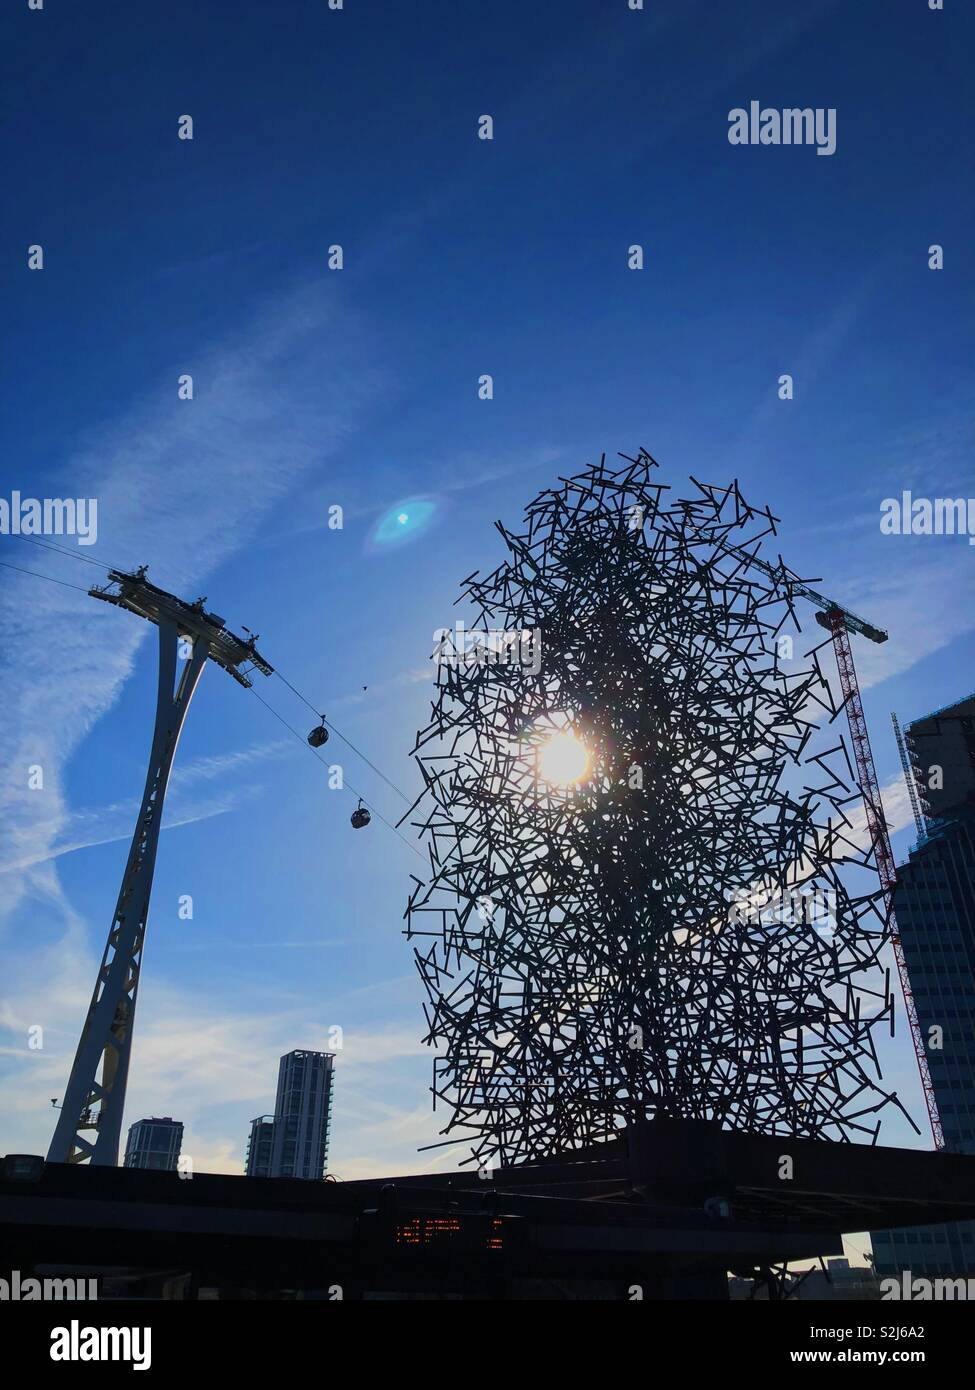 Quantum Cloud Skulptur von Antony Gormley mit der Emirates Air Line Seilbahn im Hintergrund. Greenwich, London an der Themse und der O2 Arena. Stockfoto